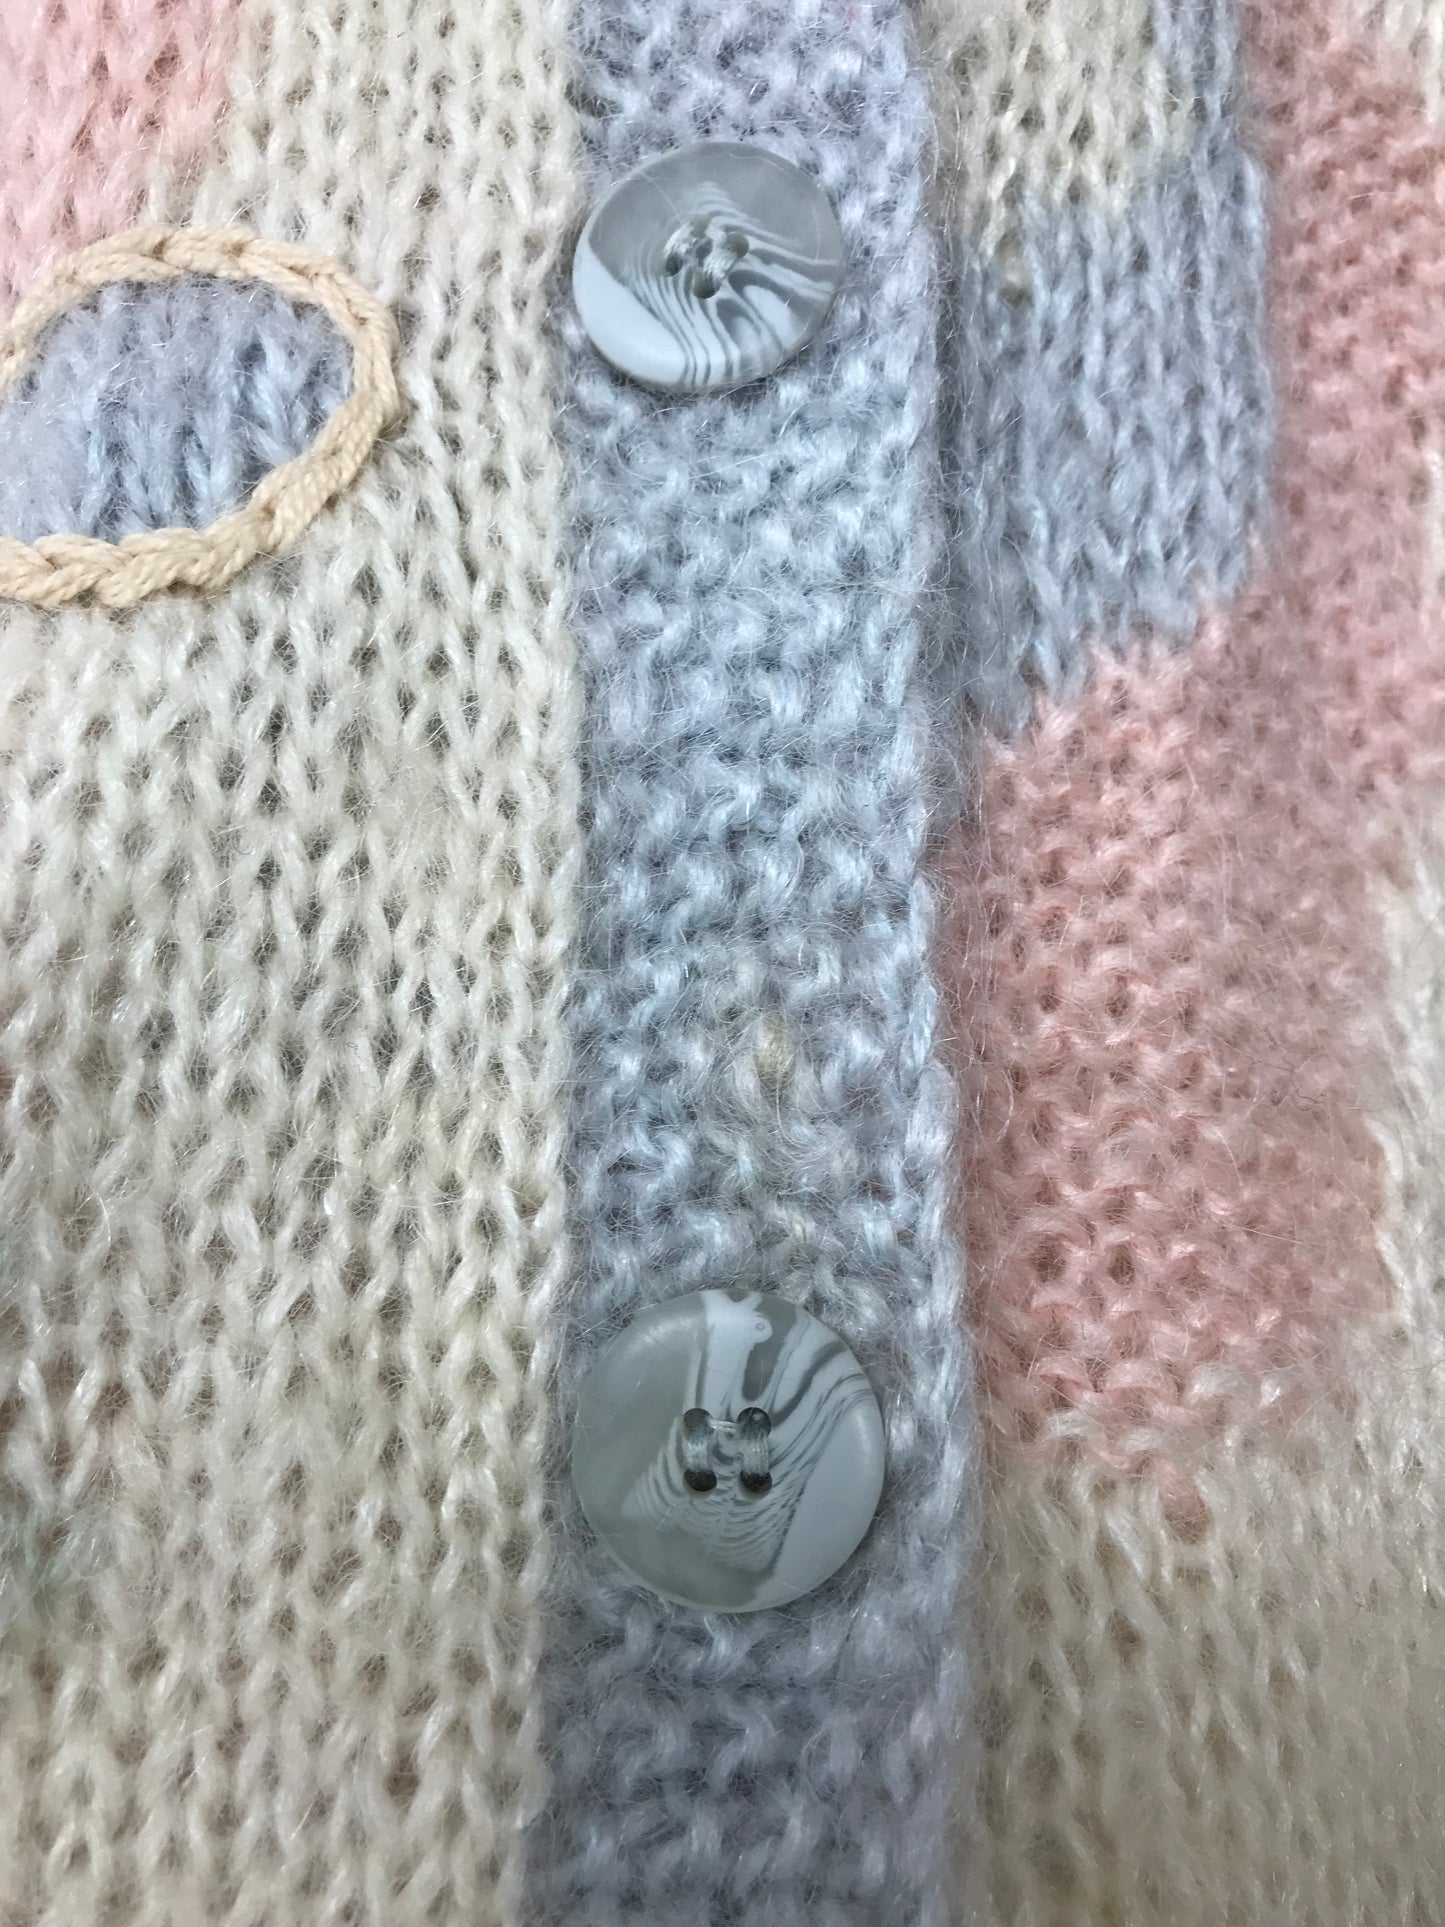 Vintage Hand Knit Cardigan〜LIZ Claiborne〜 [L25861]